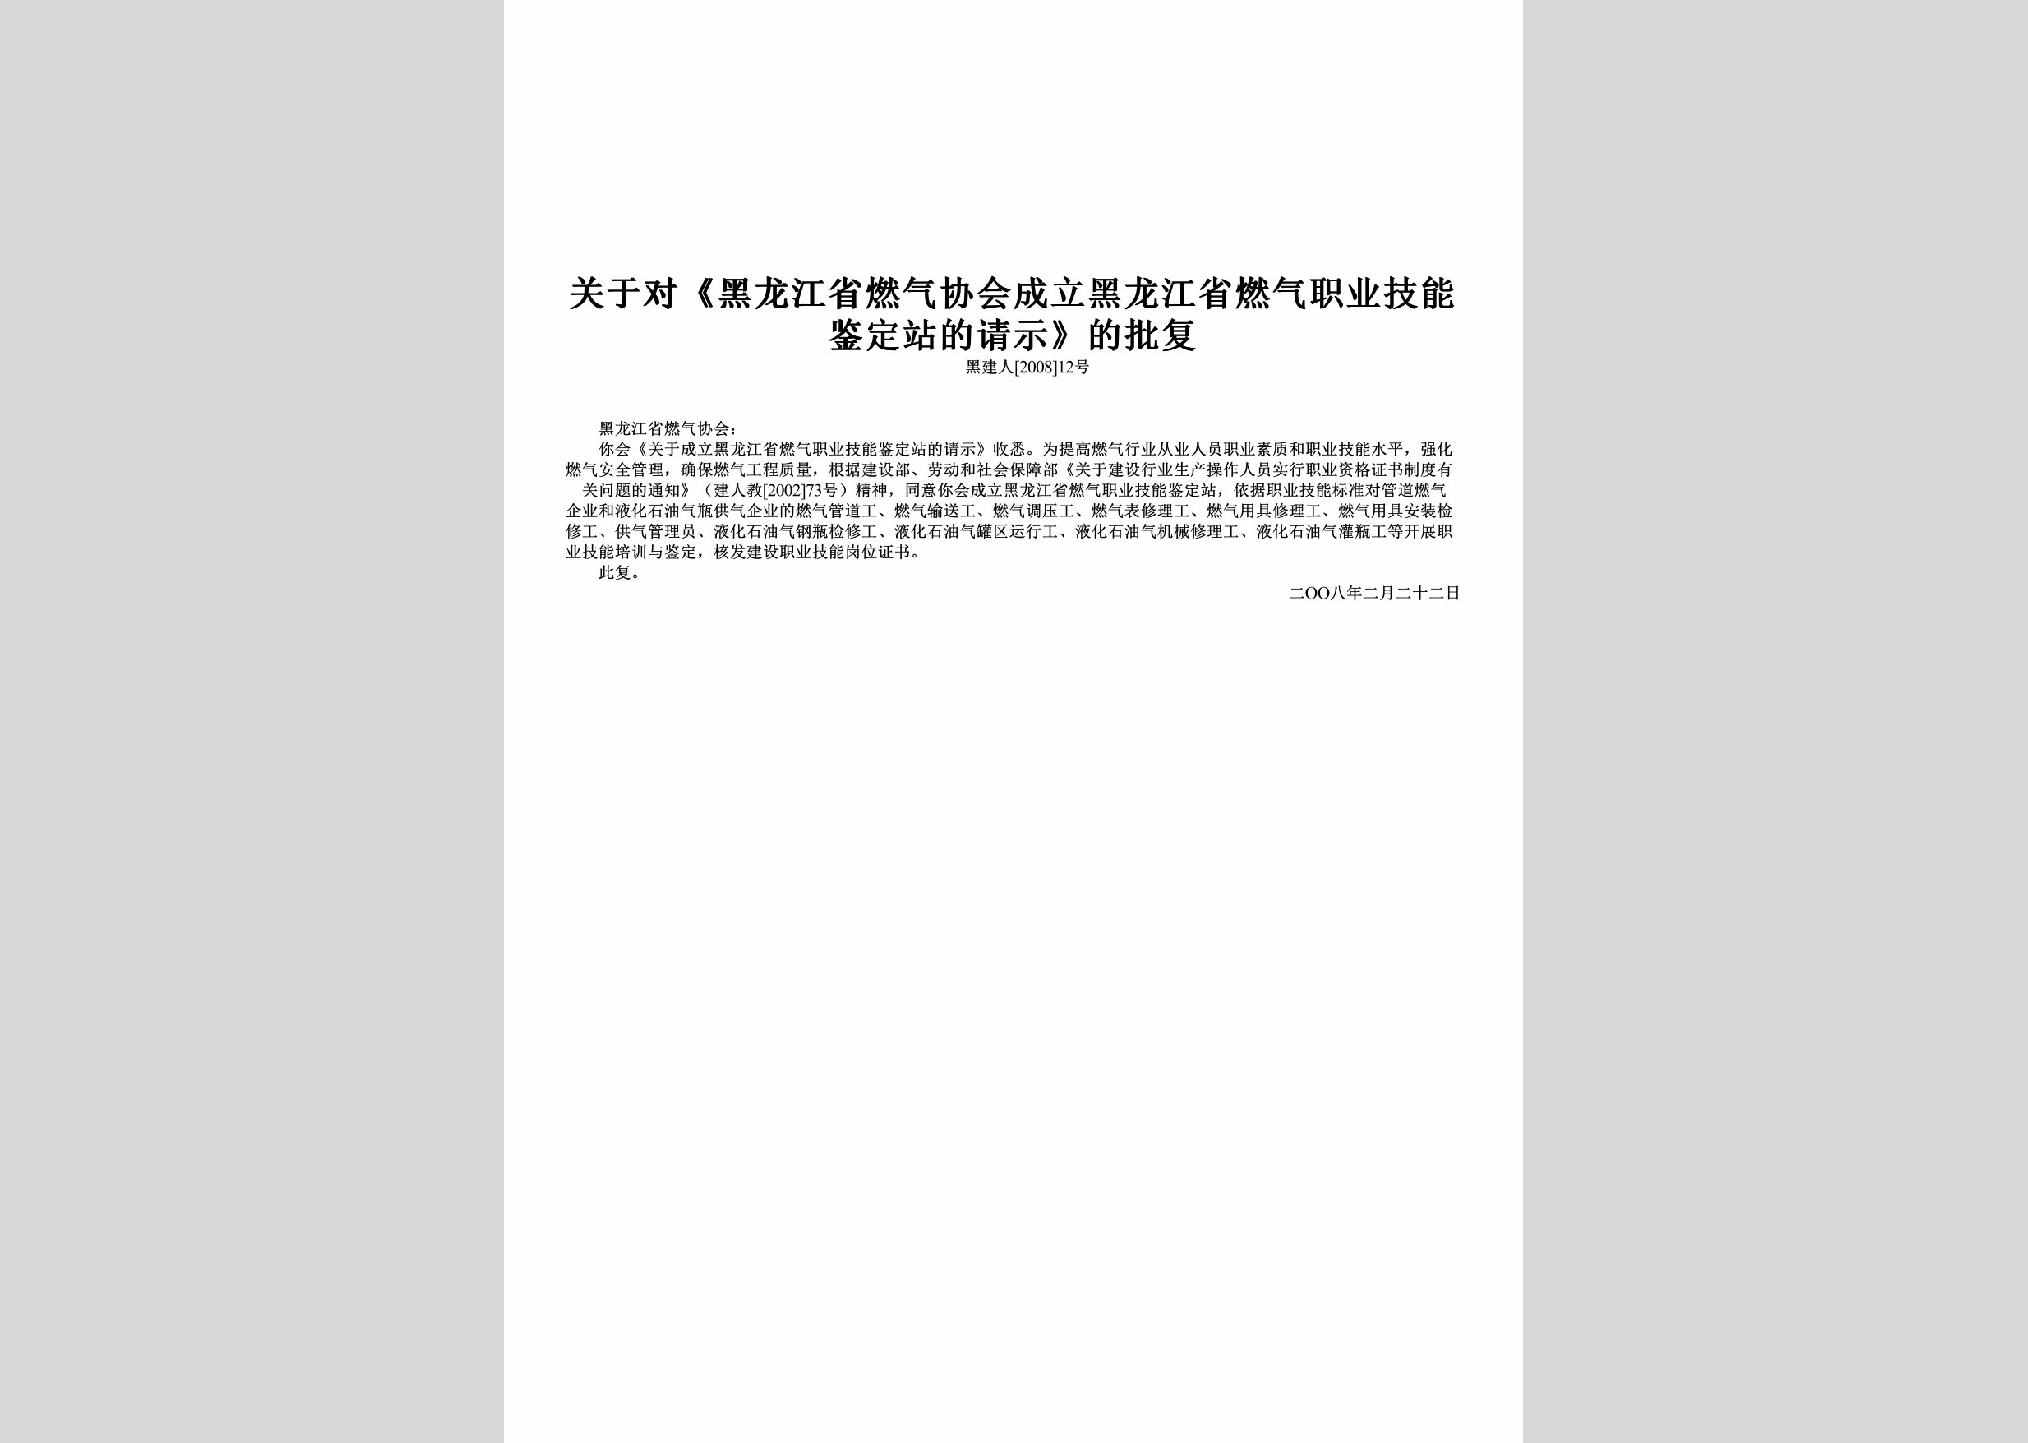 黑建人[2008]12号：关于对《黑龙江省燃气协会成立黑龙江省燃气职业技能鉴定站的请示》的批复